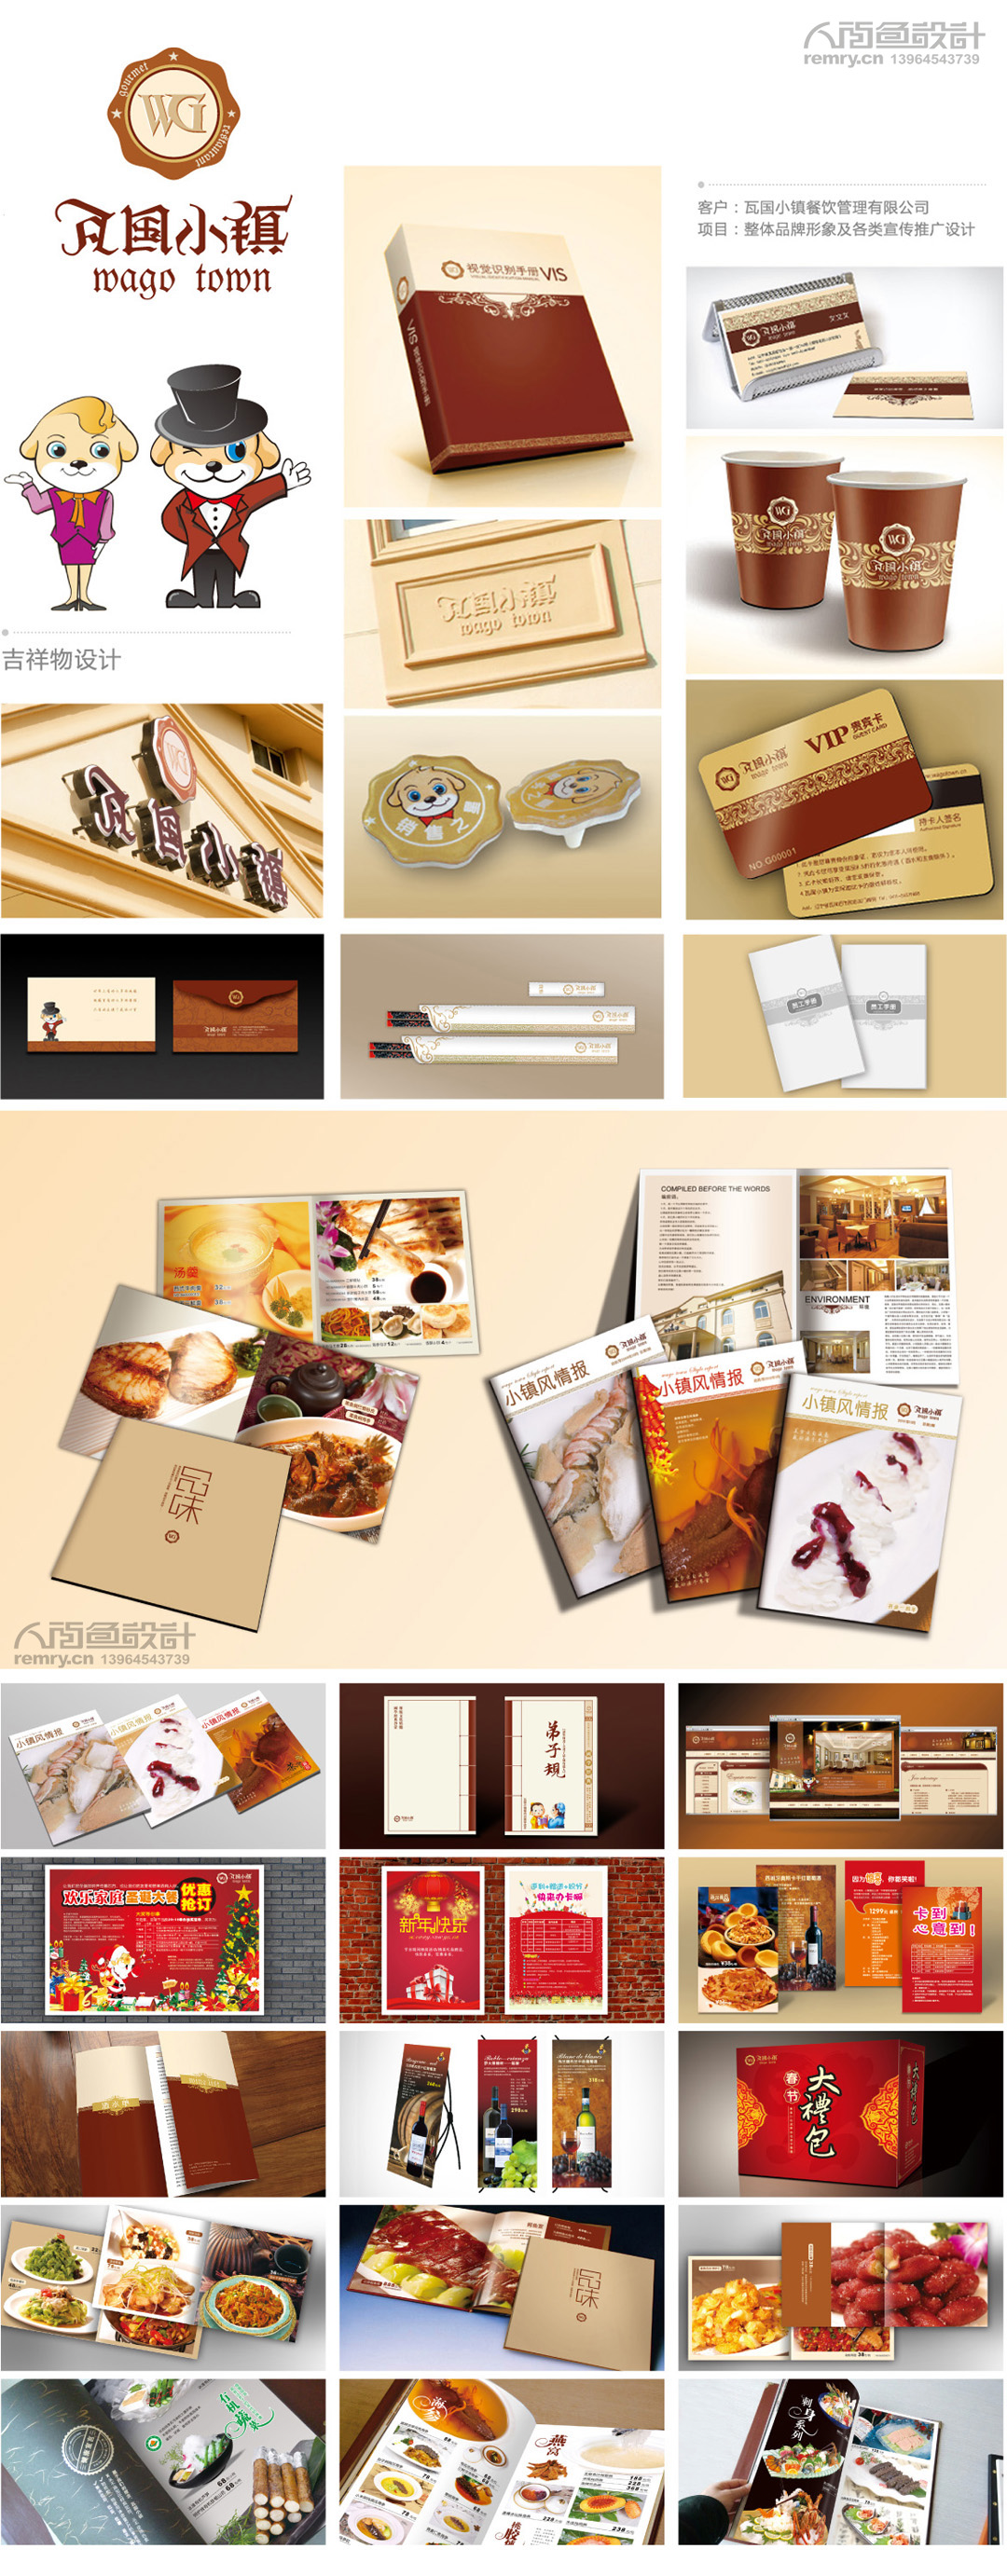 瓦国小镇餐饮整体品牌形象设计,新品牌塑造,PiS产品形象识别系统设计